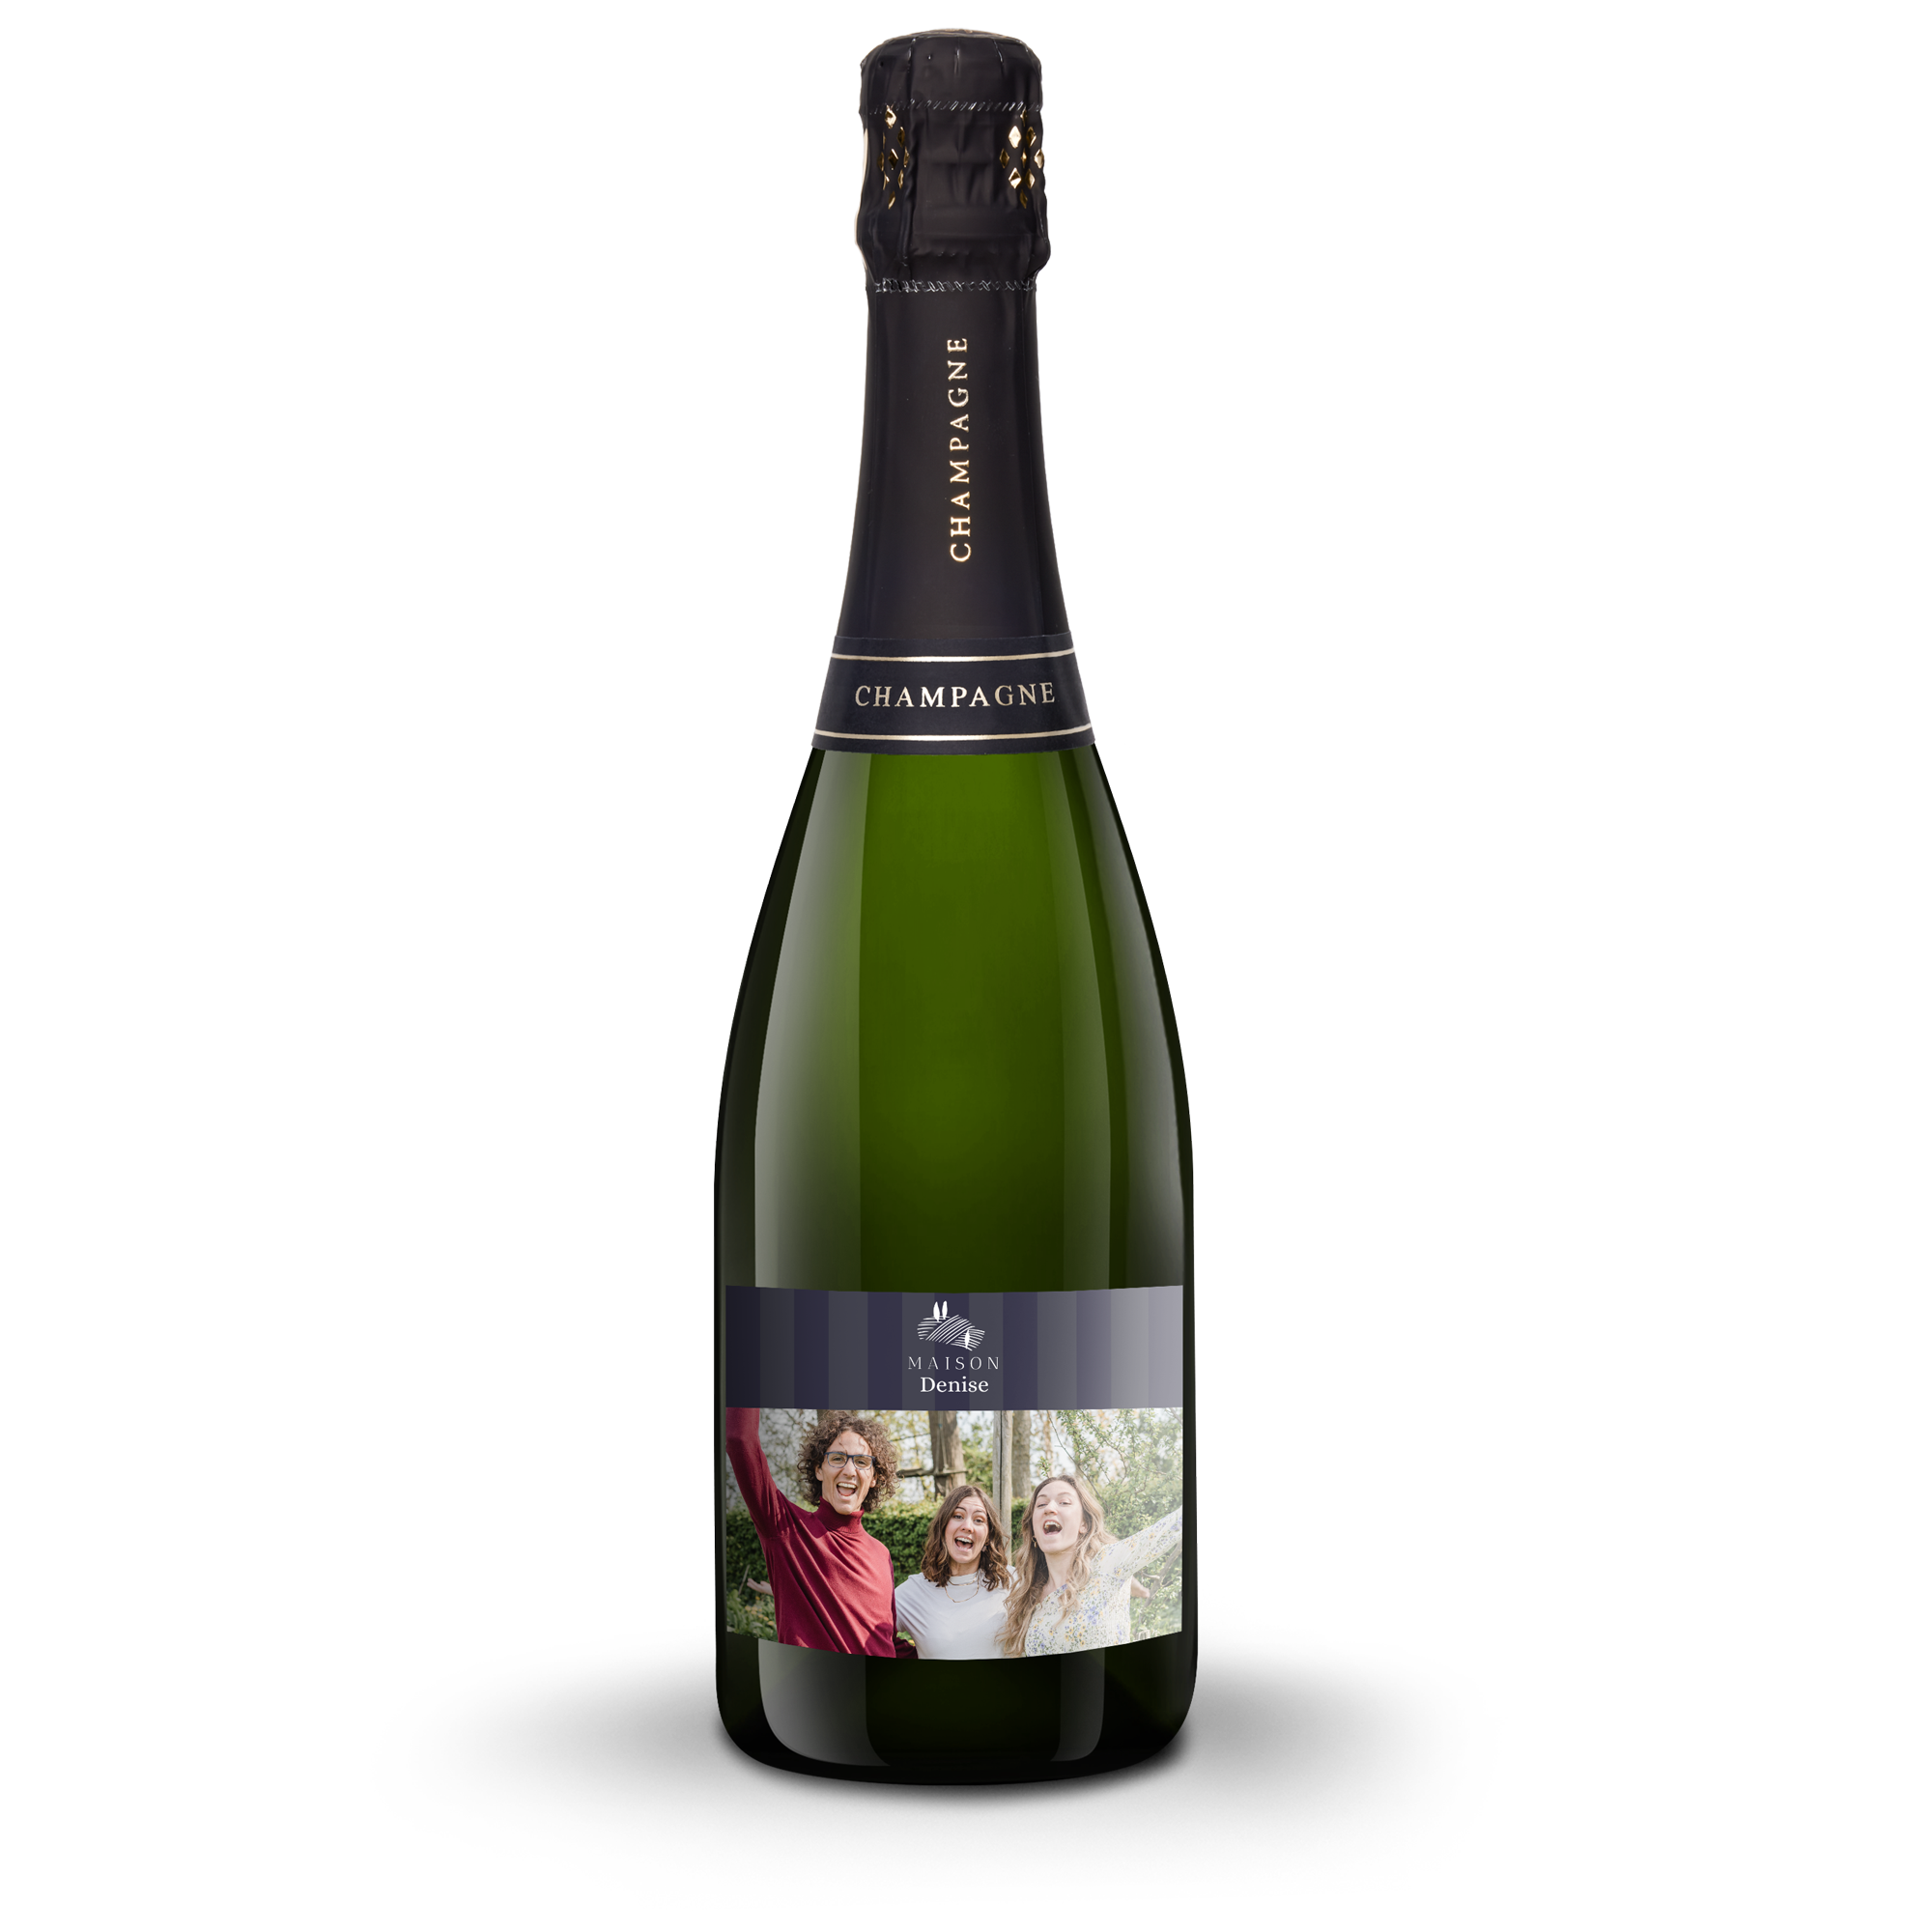 Rene Schloesser champagne 750 ml